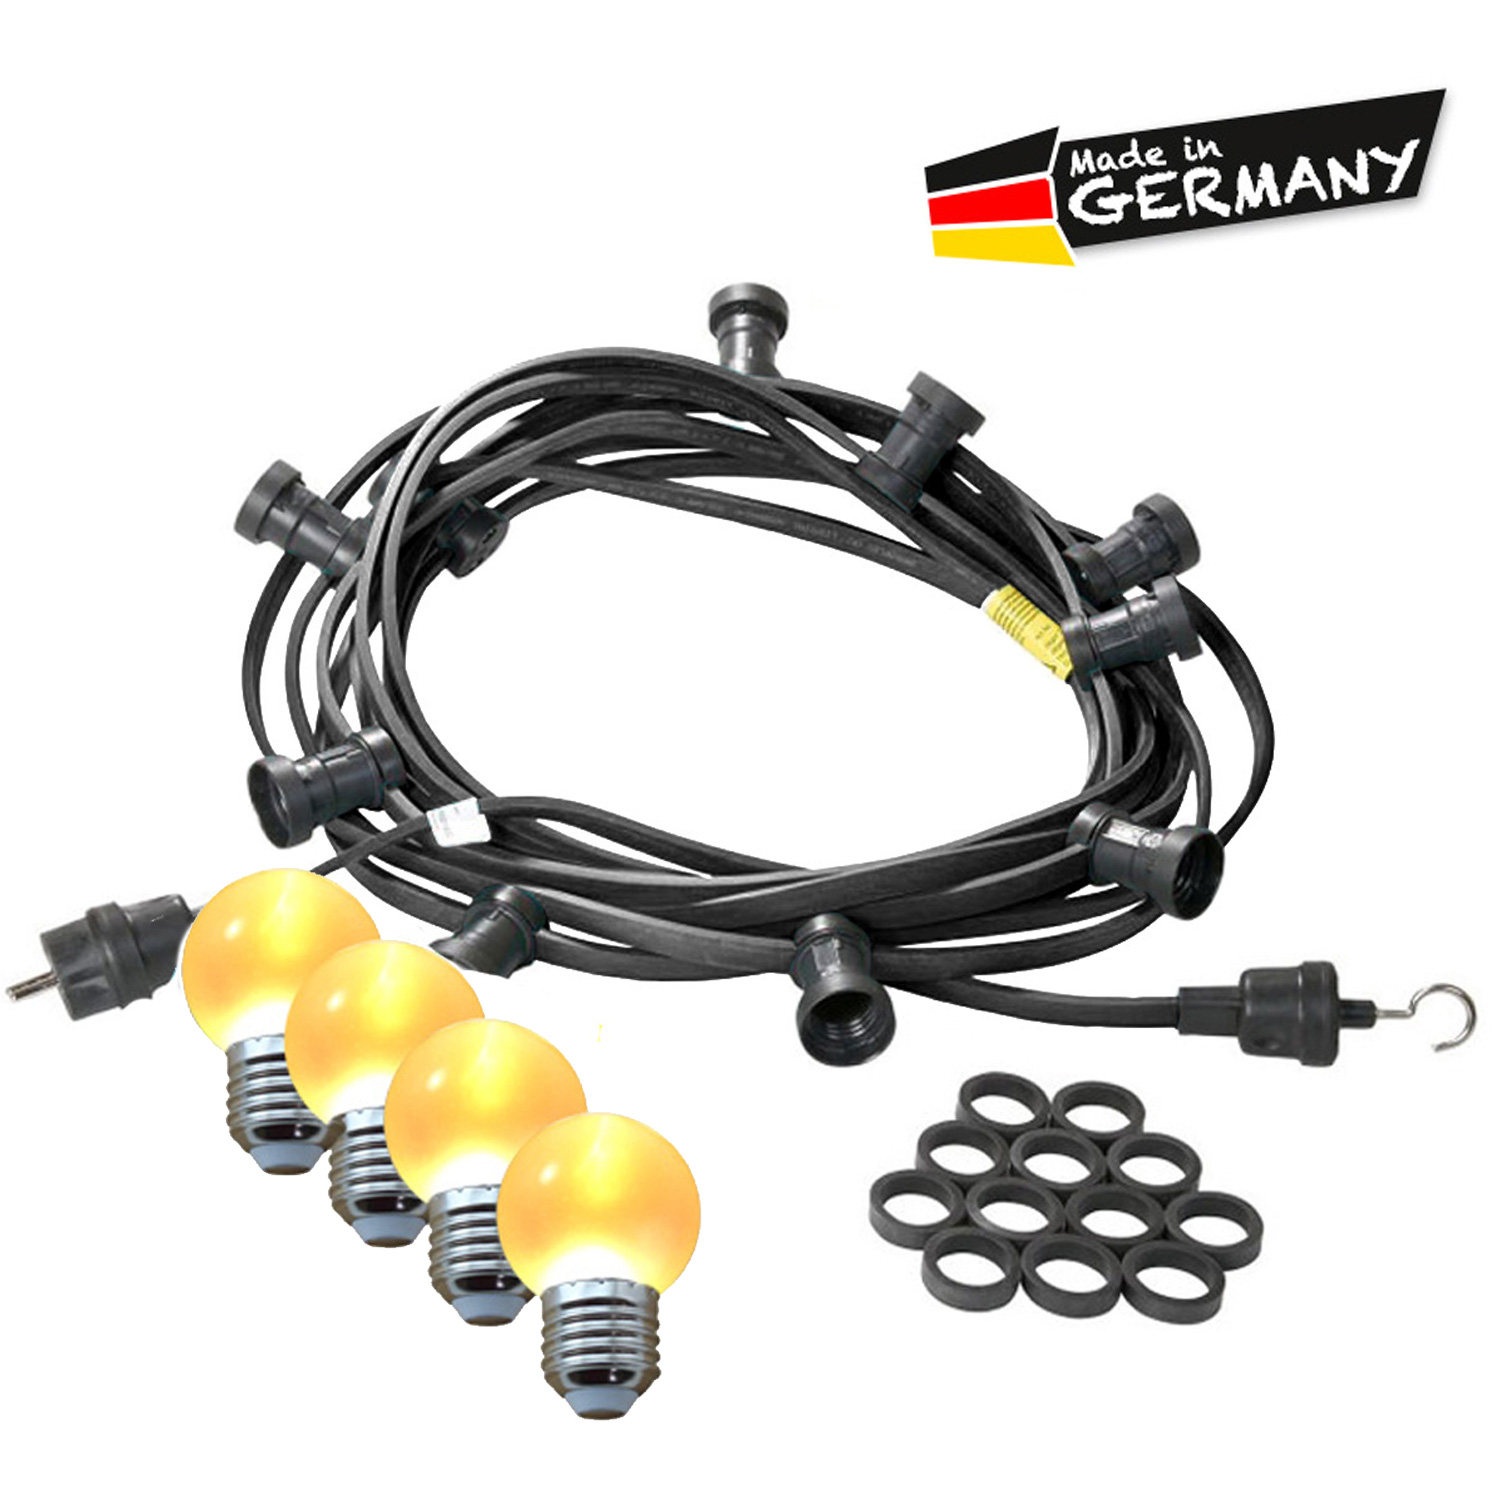 Illu-/Partylichterkette 30m - Außenlichterkette - Made in Germany - 50 x ultra-warmweiße LED Kugeln